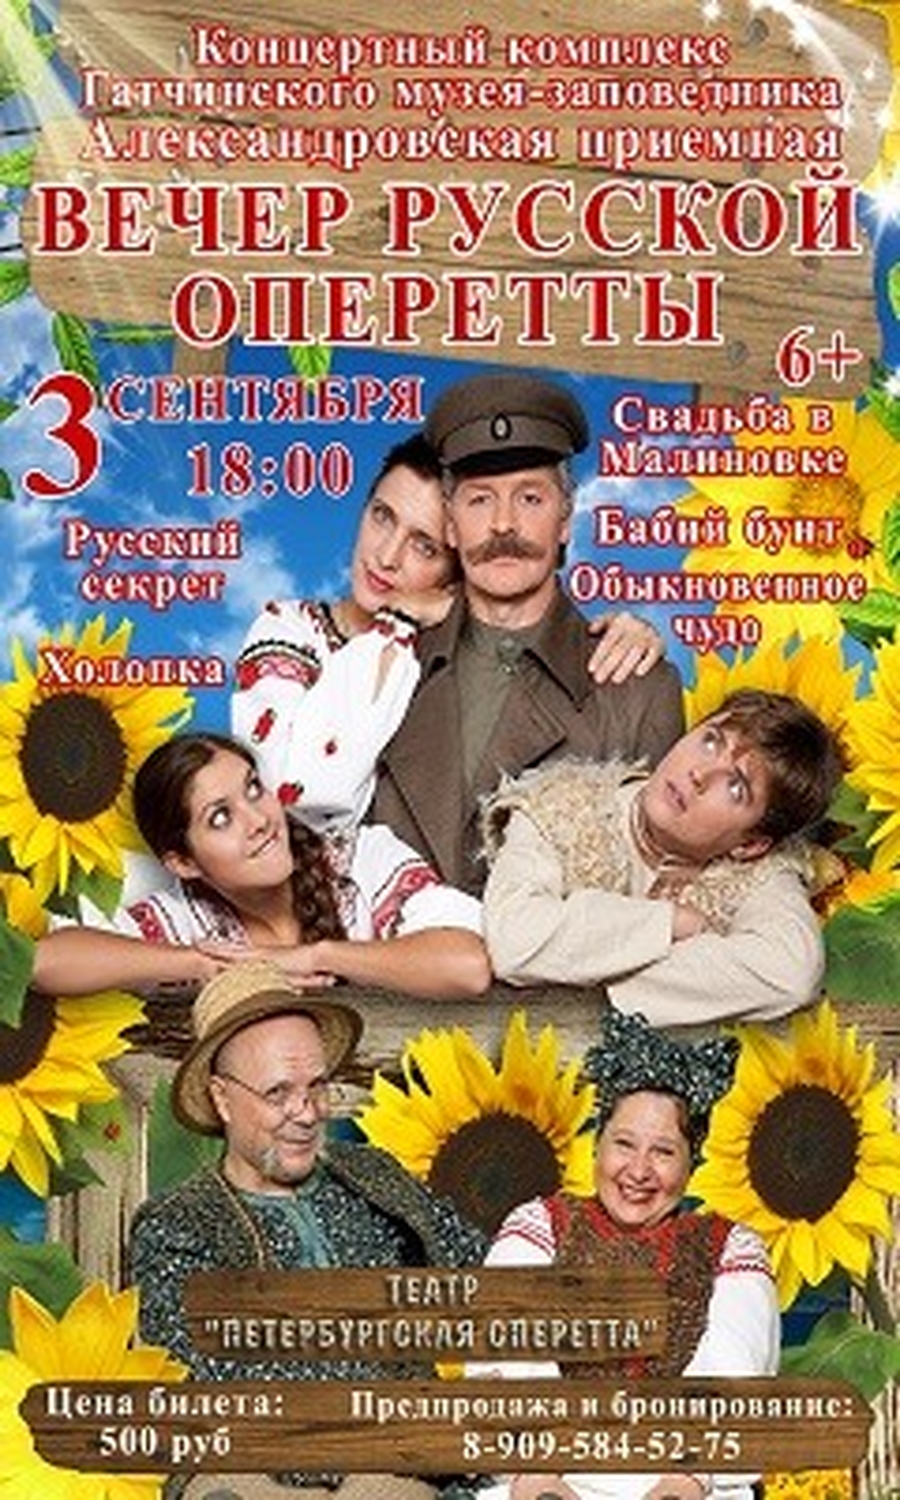 3 сентября состоится вечер русской оперетты